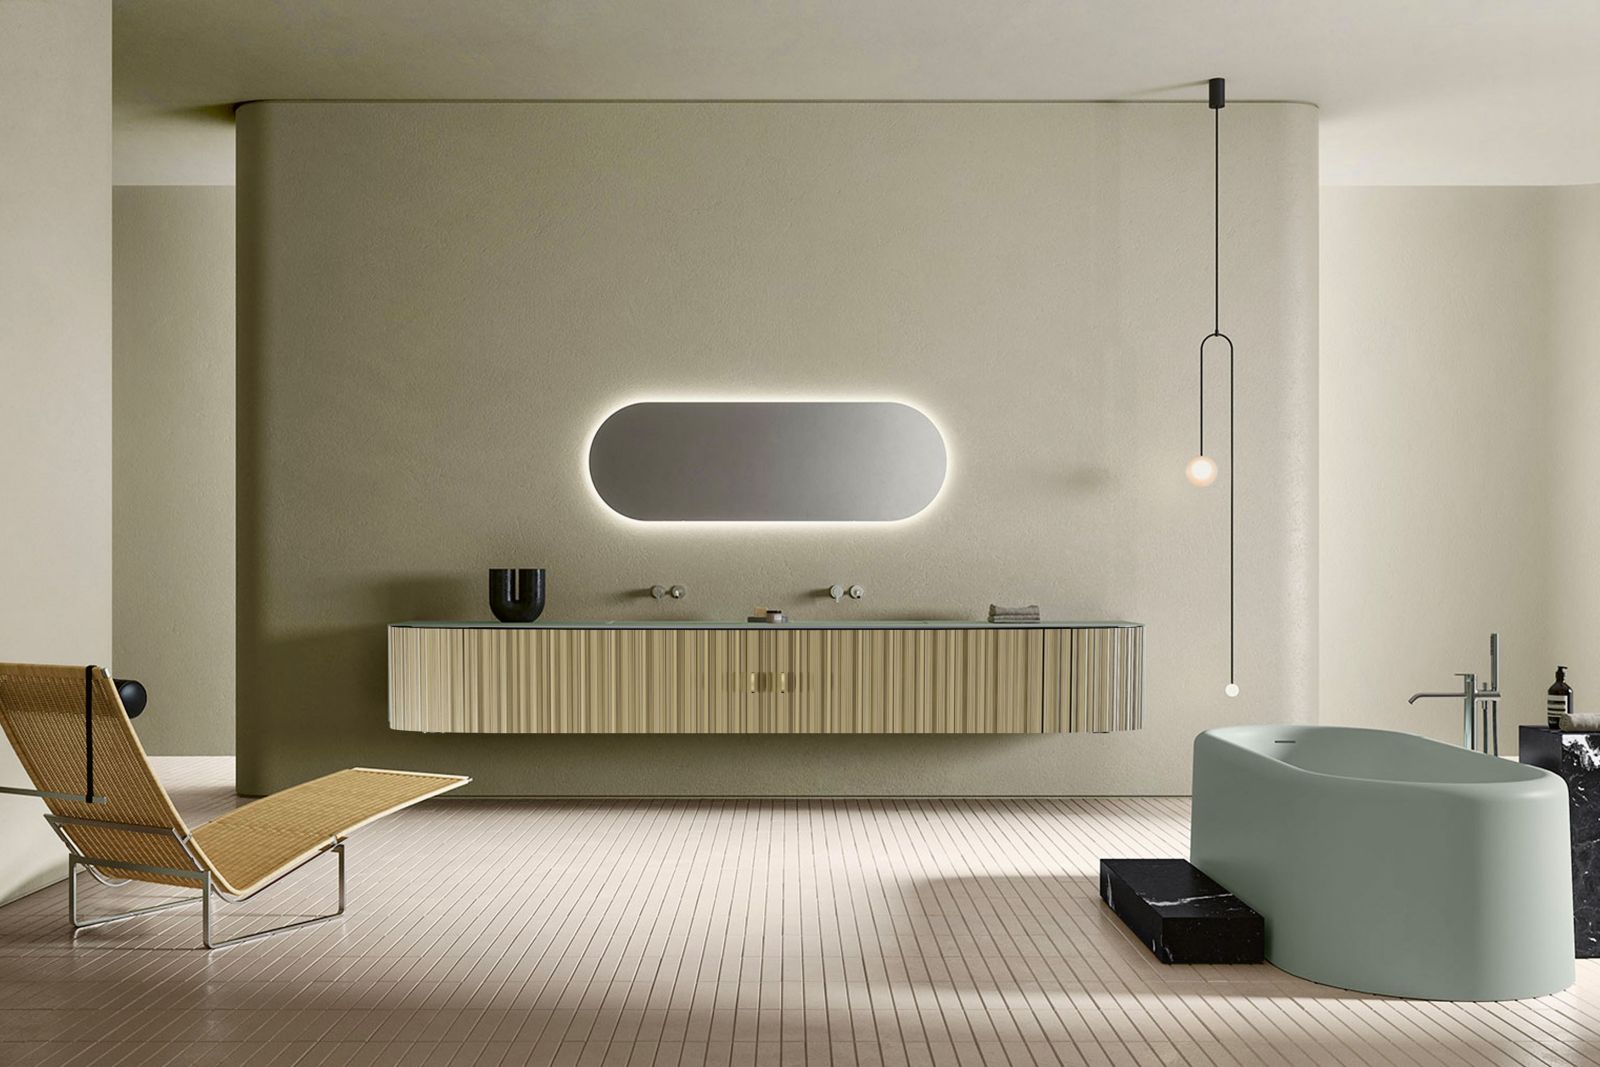 Das neue Badmöbel mit Rollfront-System, designt von Daniel T. Maurer und Christophe Marchand.